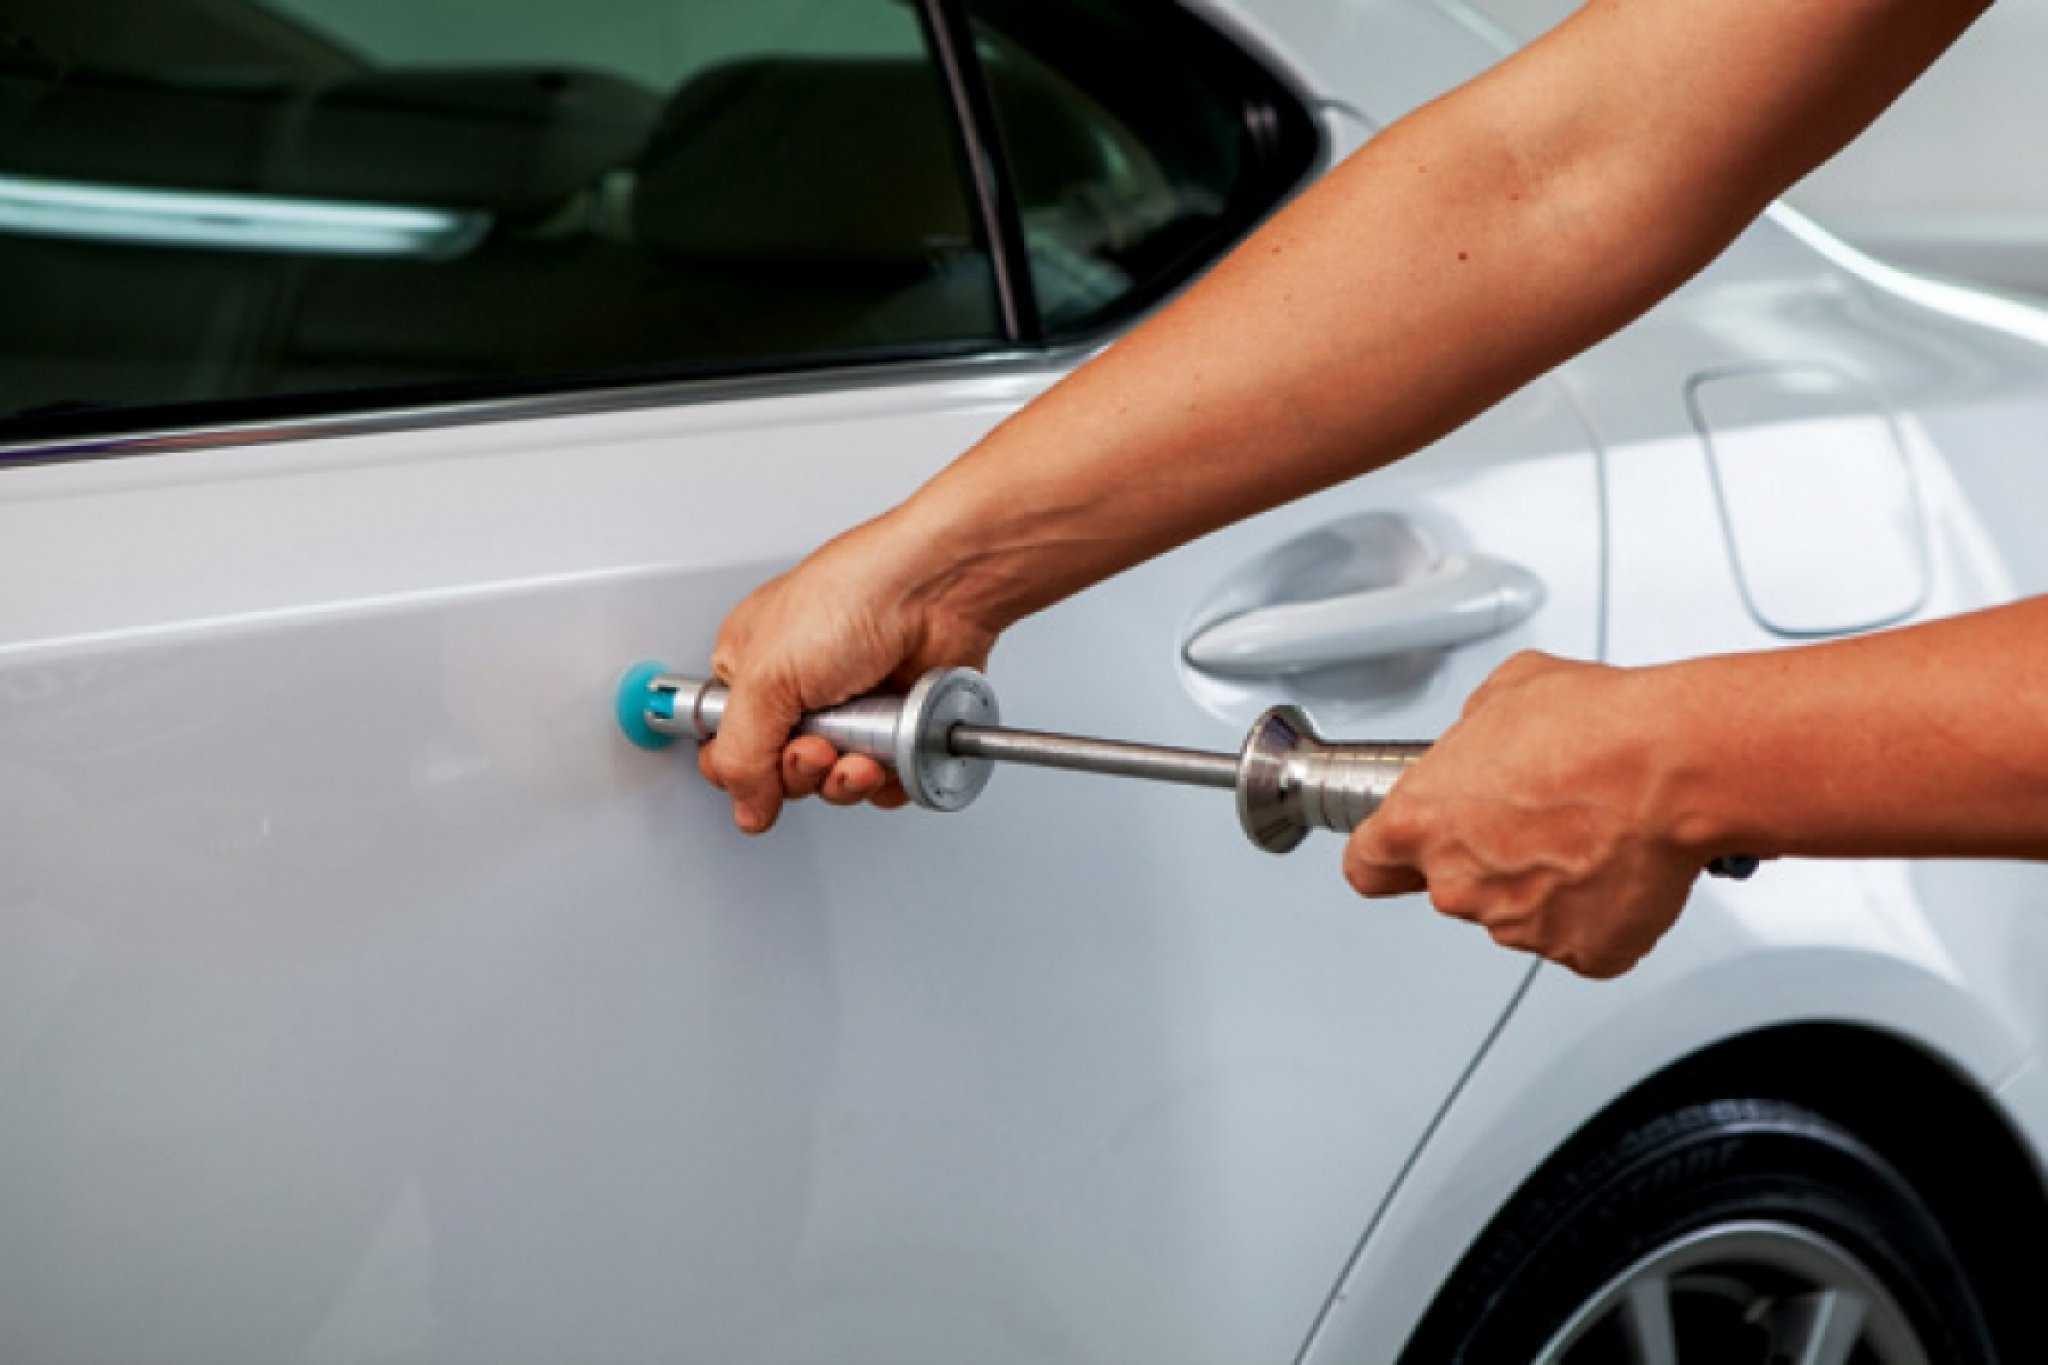 Выравнивание вмятин на кузове автомобиля можно проводить разными способами, например, путем выстукивания, клеевым методом, а также применяя фен или магнит